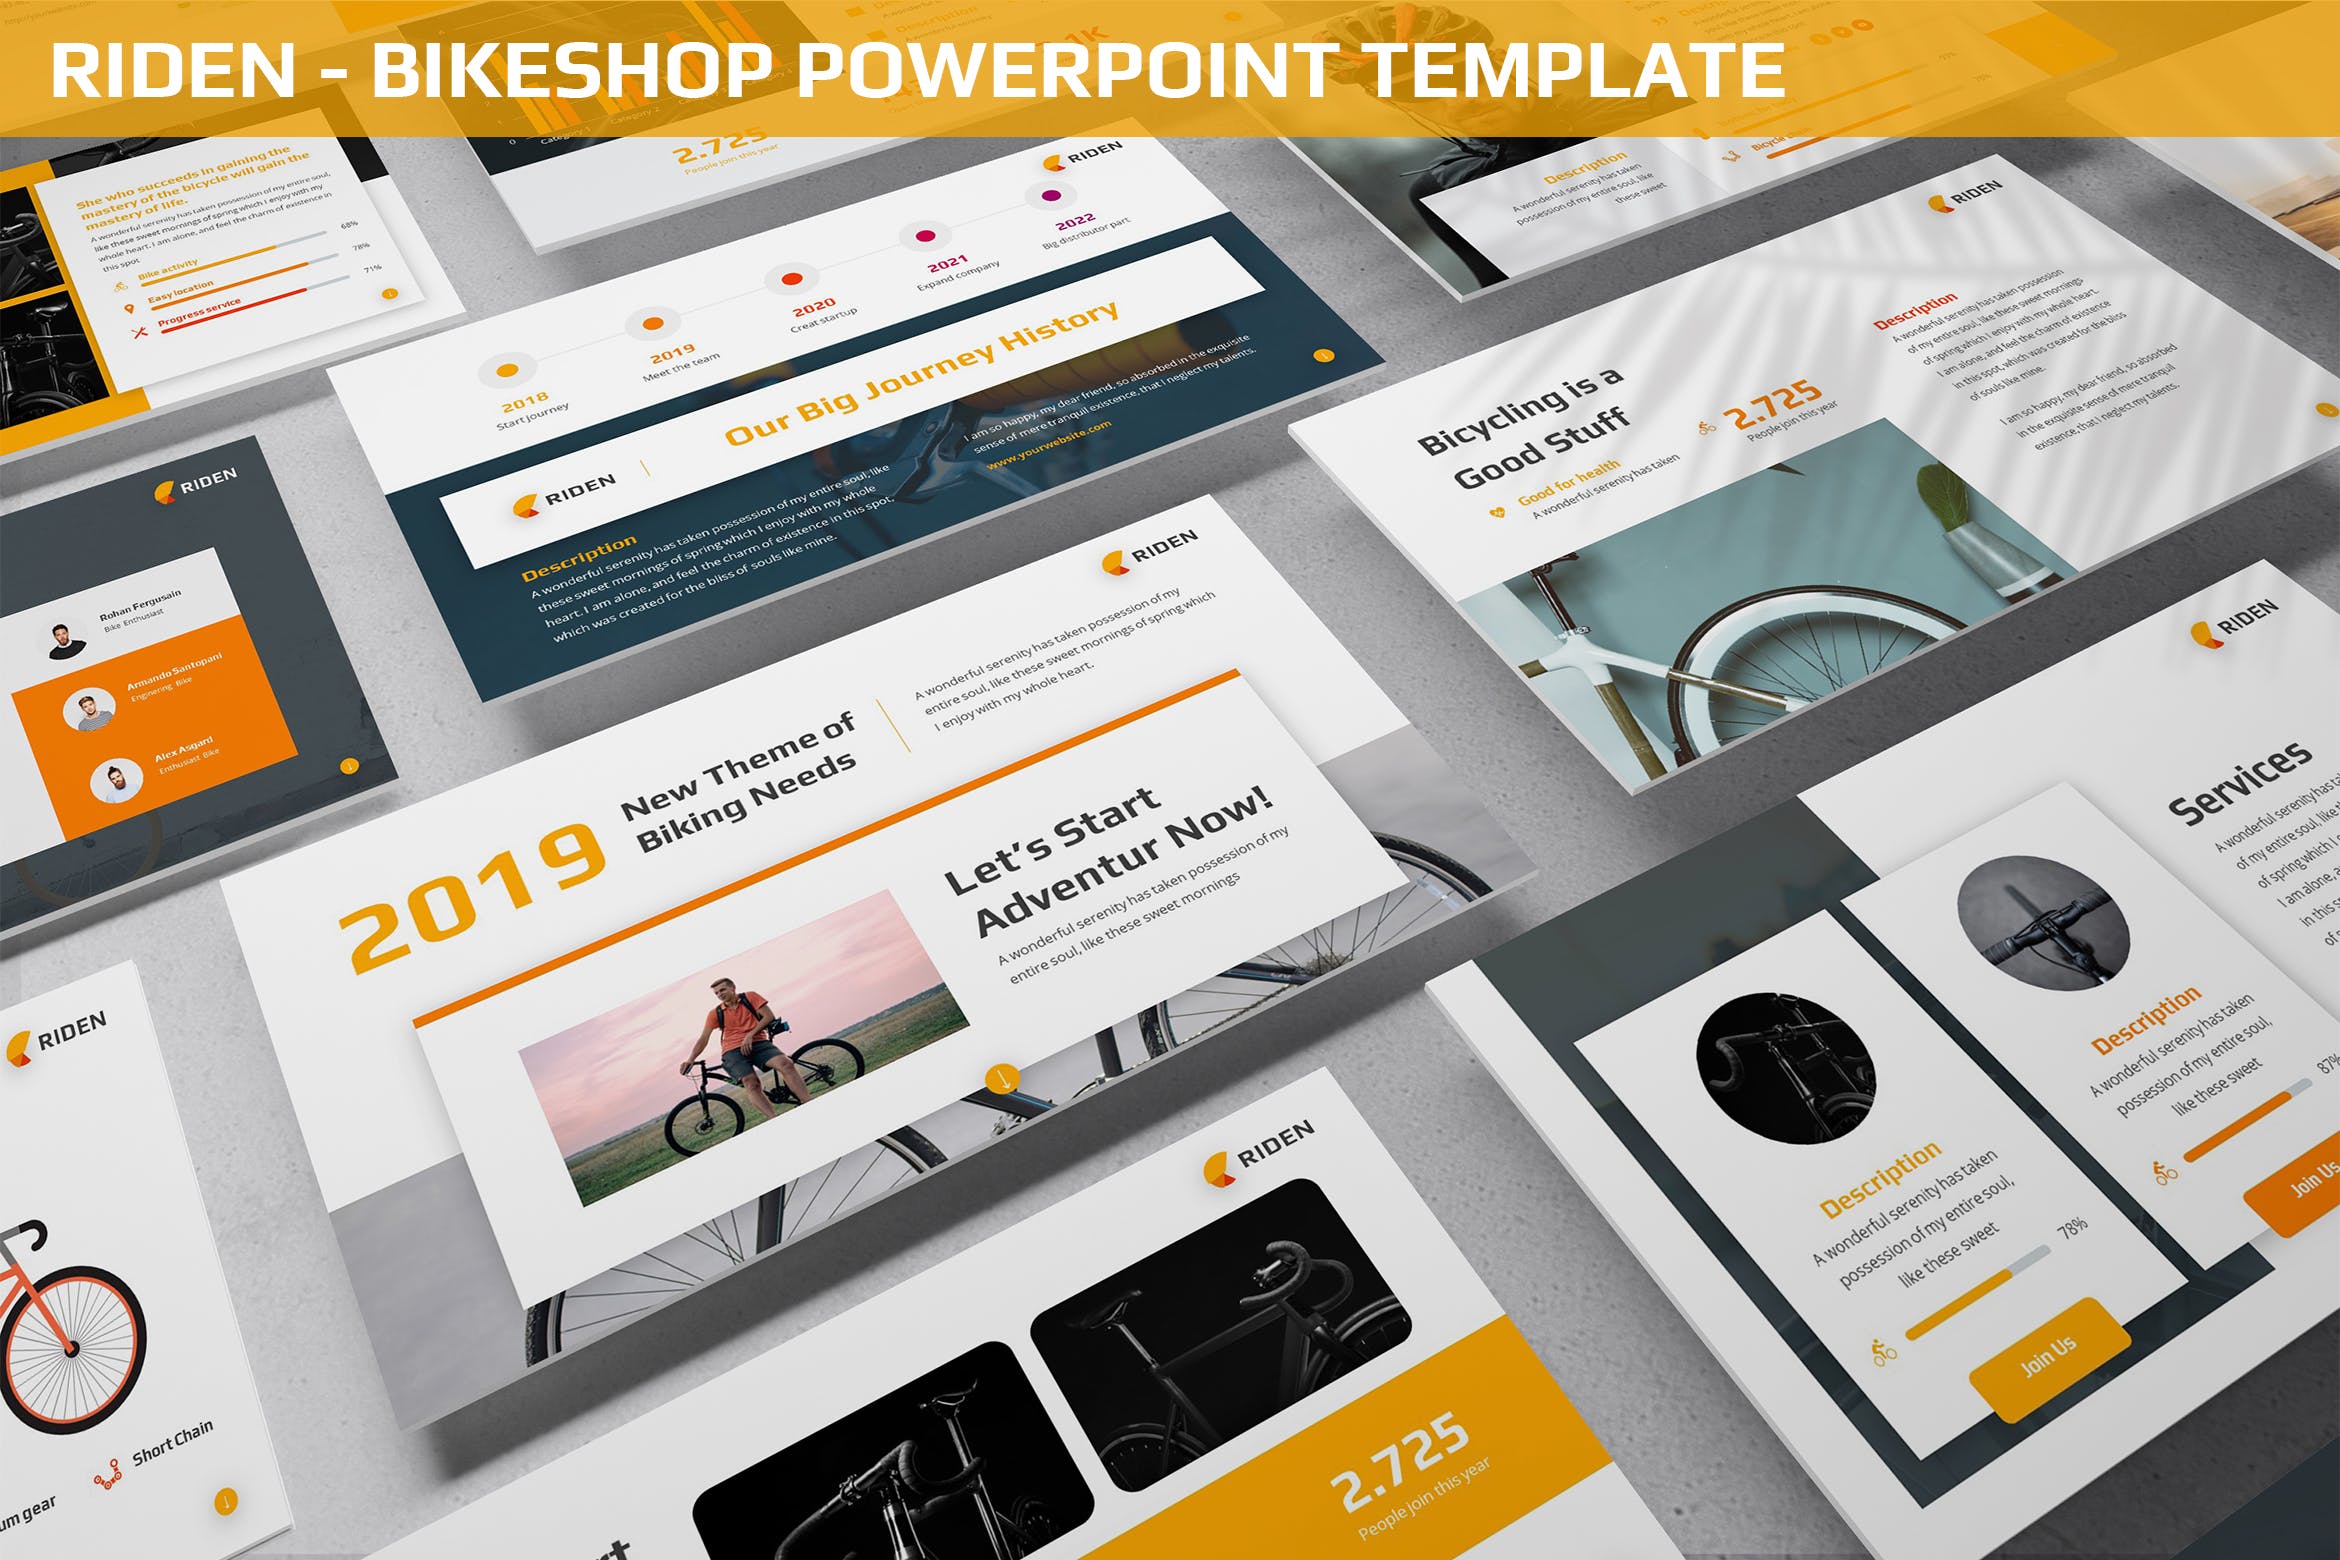 自行车品牌介绍PPT幻灯片模板 Riden – Bikeshop Powerpoint Template插图